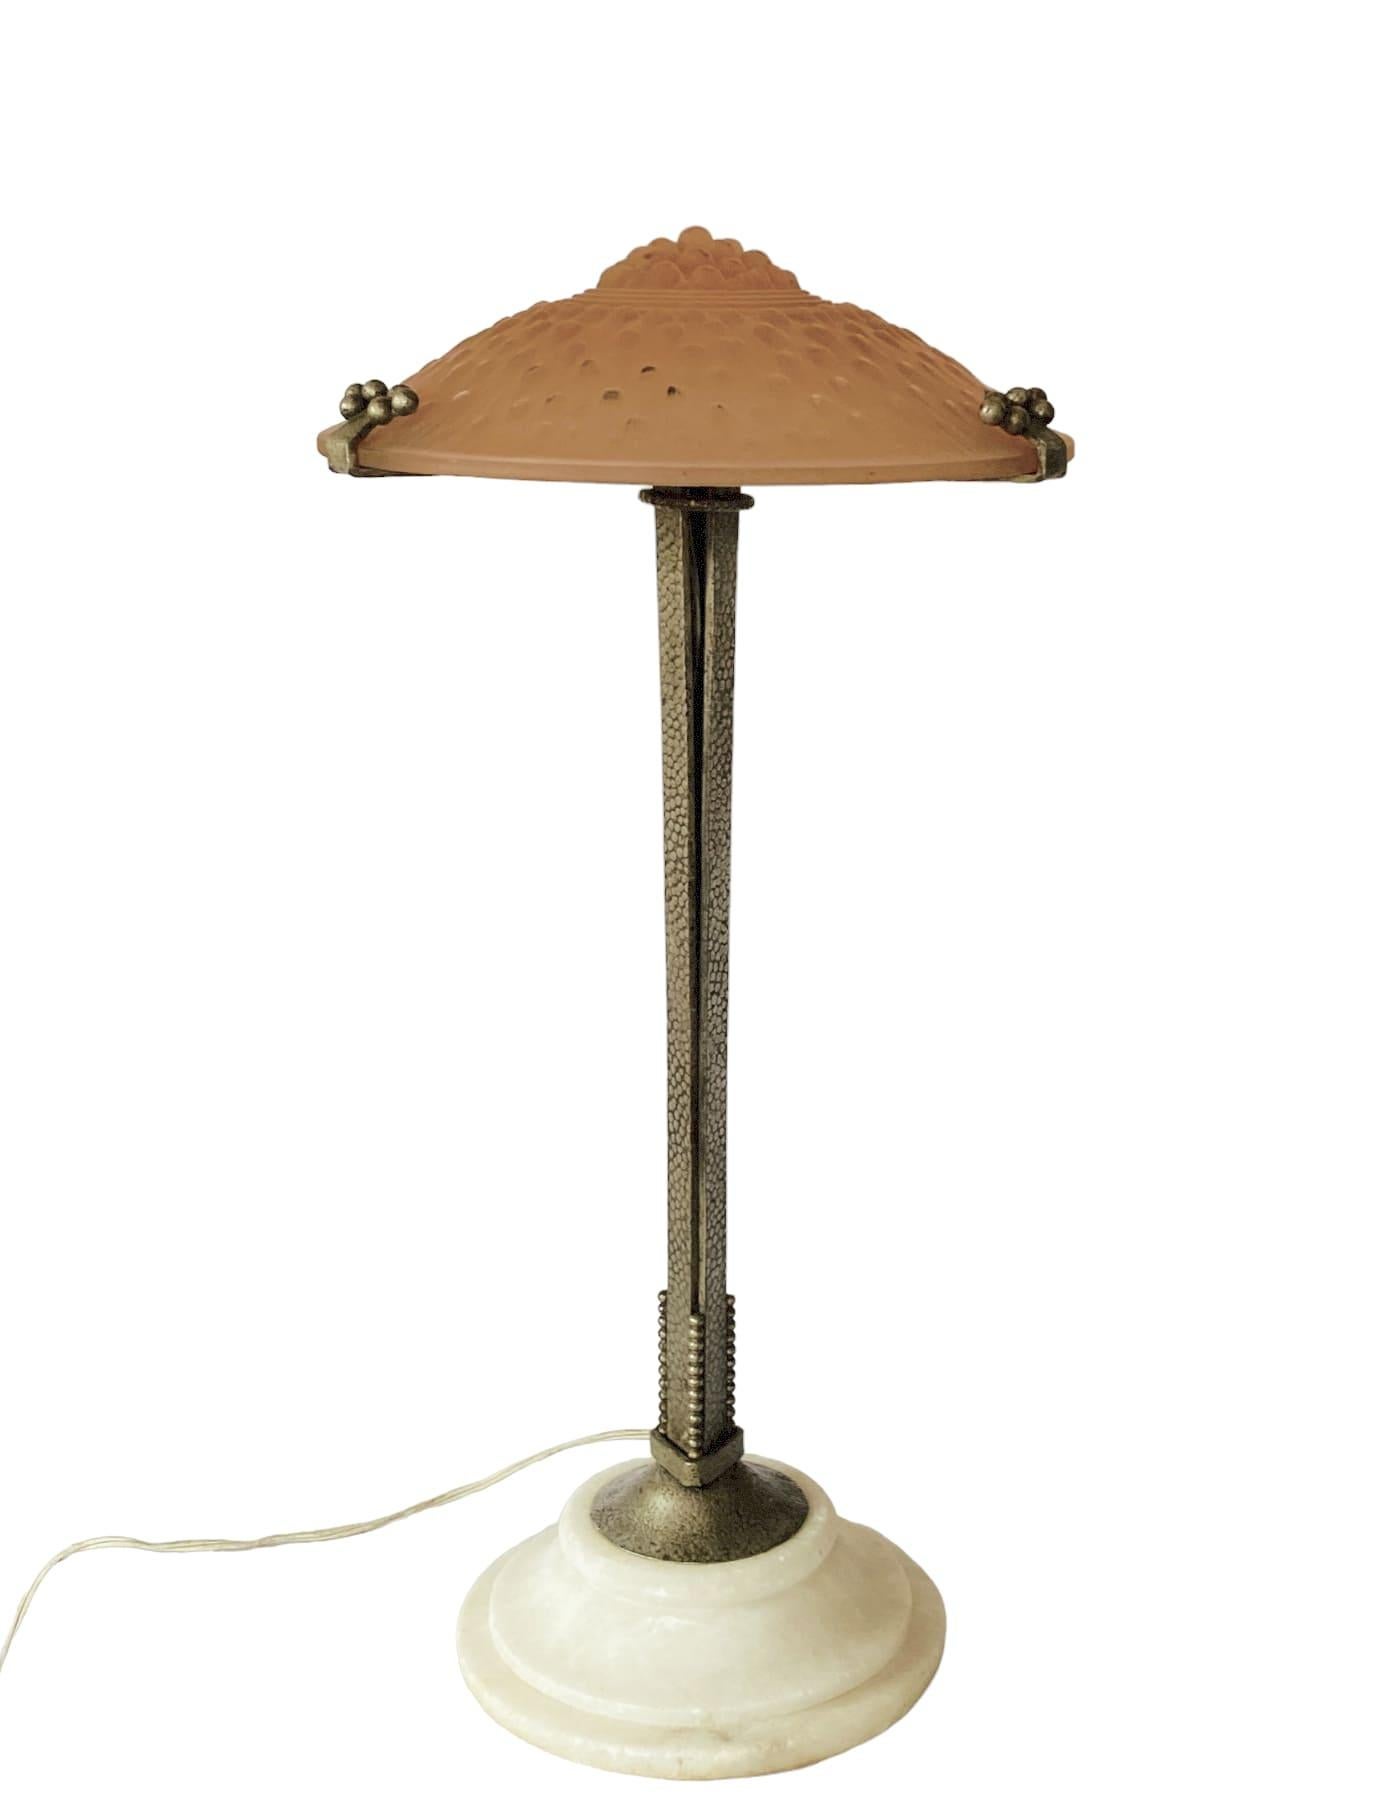 Monumentale lampe de table Art Déco.

Muller Freres Luneville, France, vers 1920

attribué à Edgar Brandt

Décorations de bulles sur verre rose. Fer décoré à la main. Importante base en albâtre.

Signé 